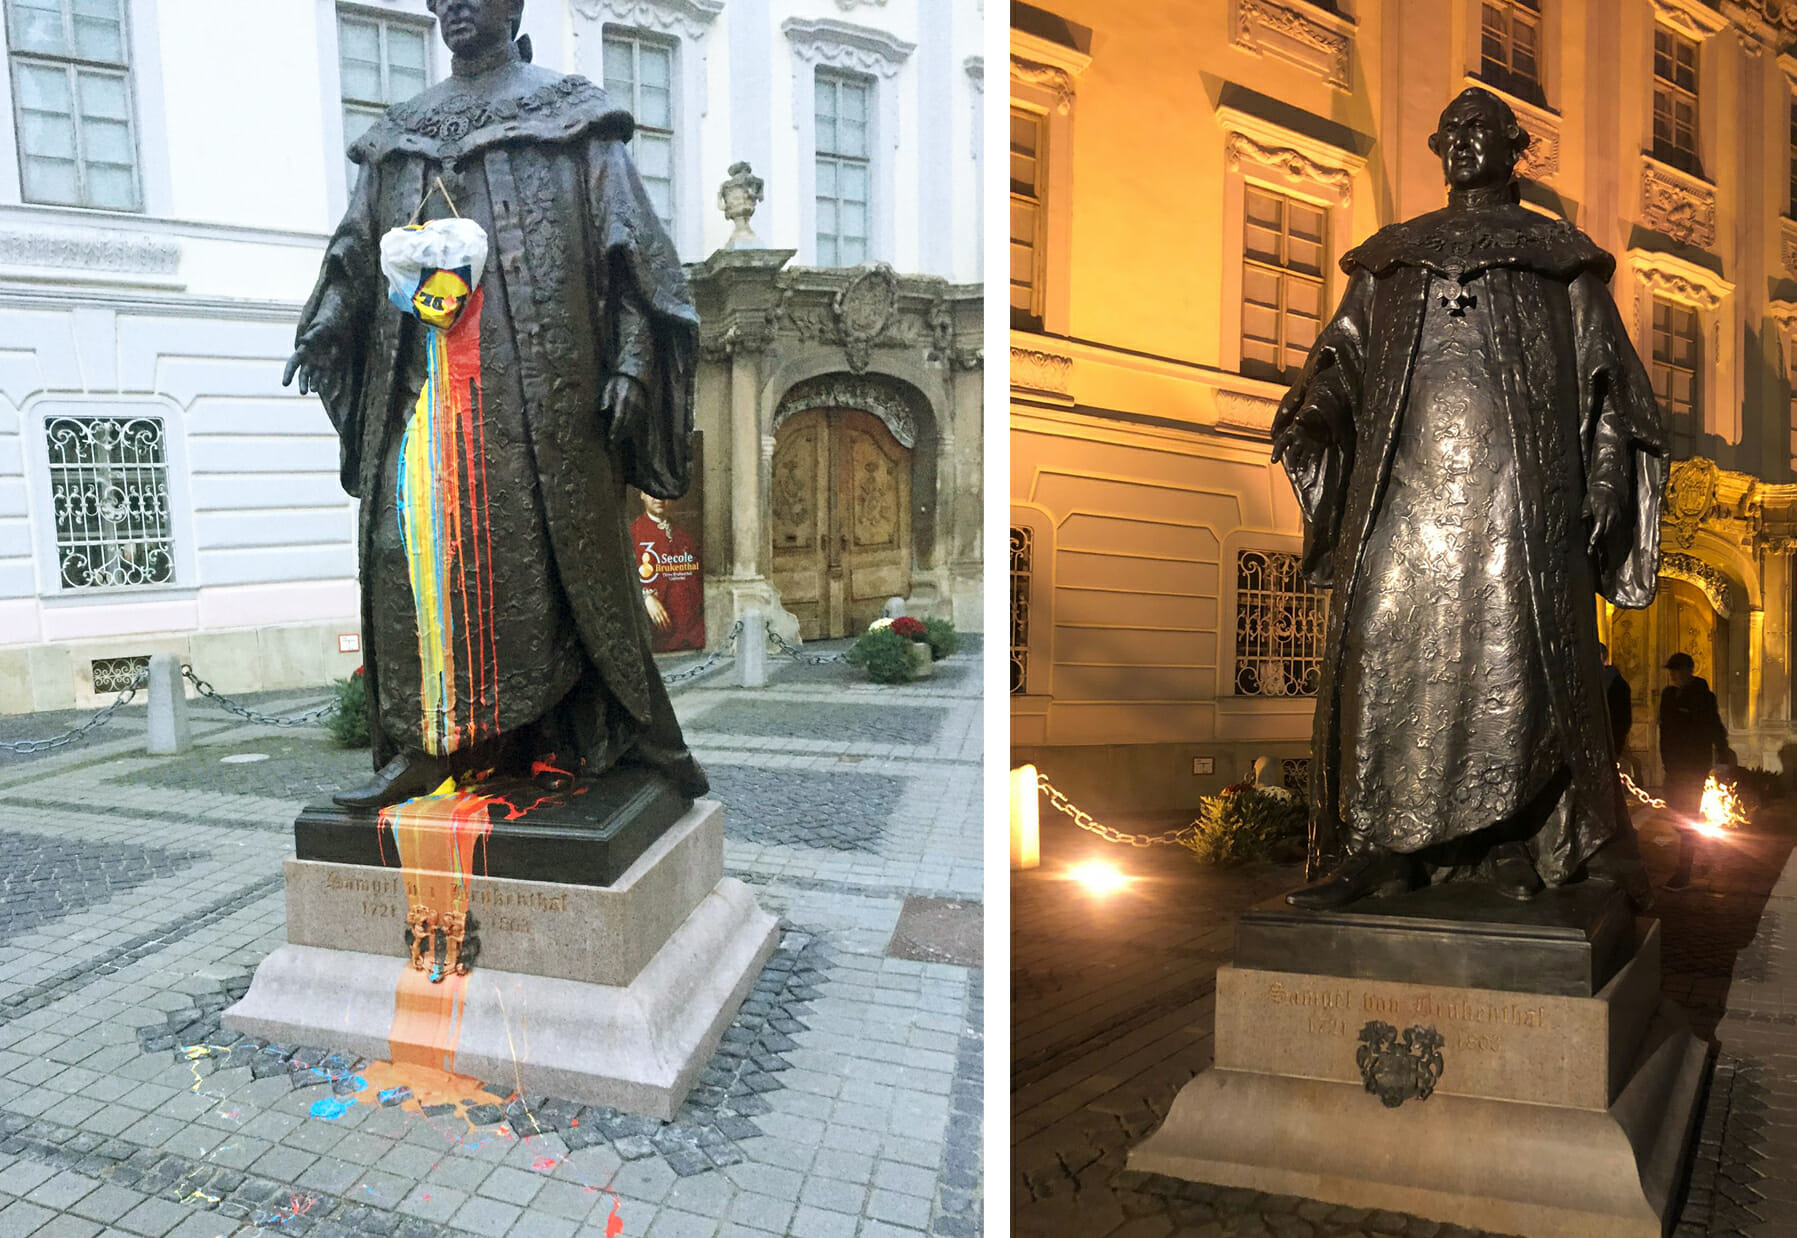 A fost găsită persoana care a vandalizat statuia lui Brukenthal din Sibiu. Ce sancţiune a primit